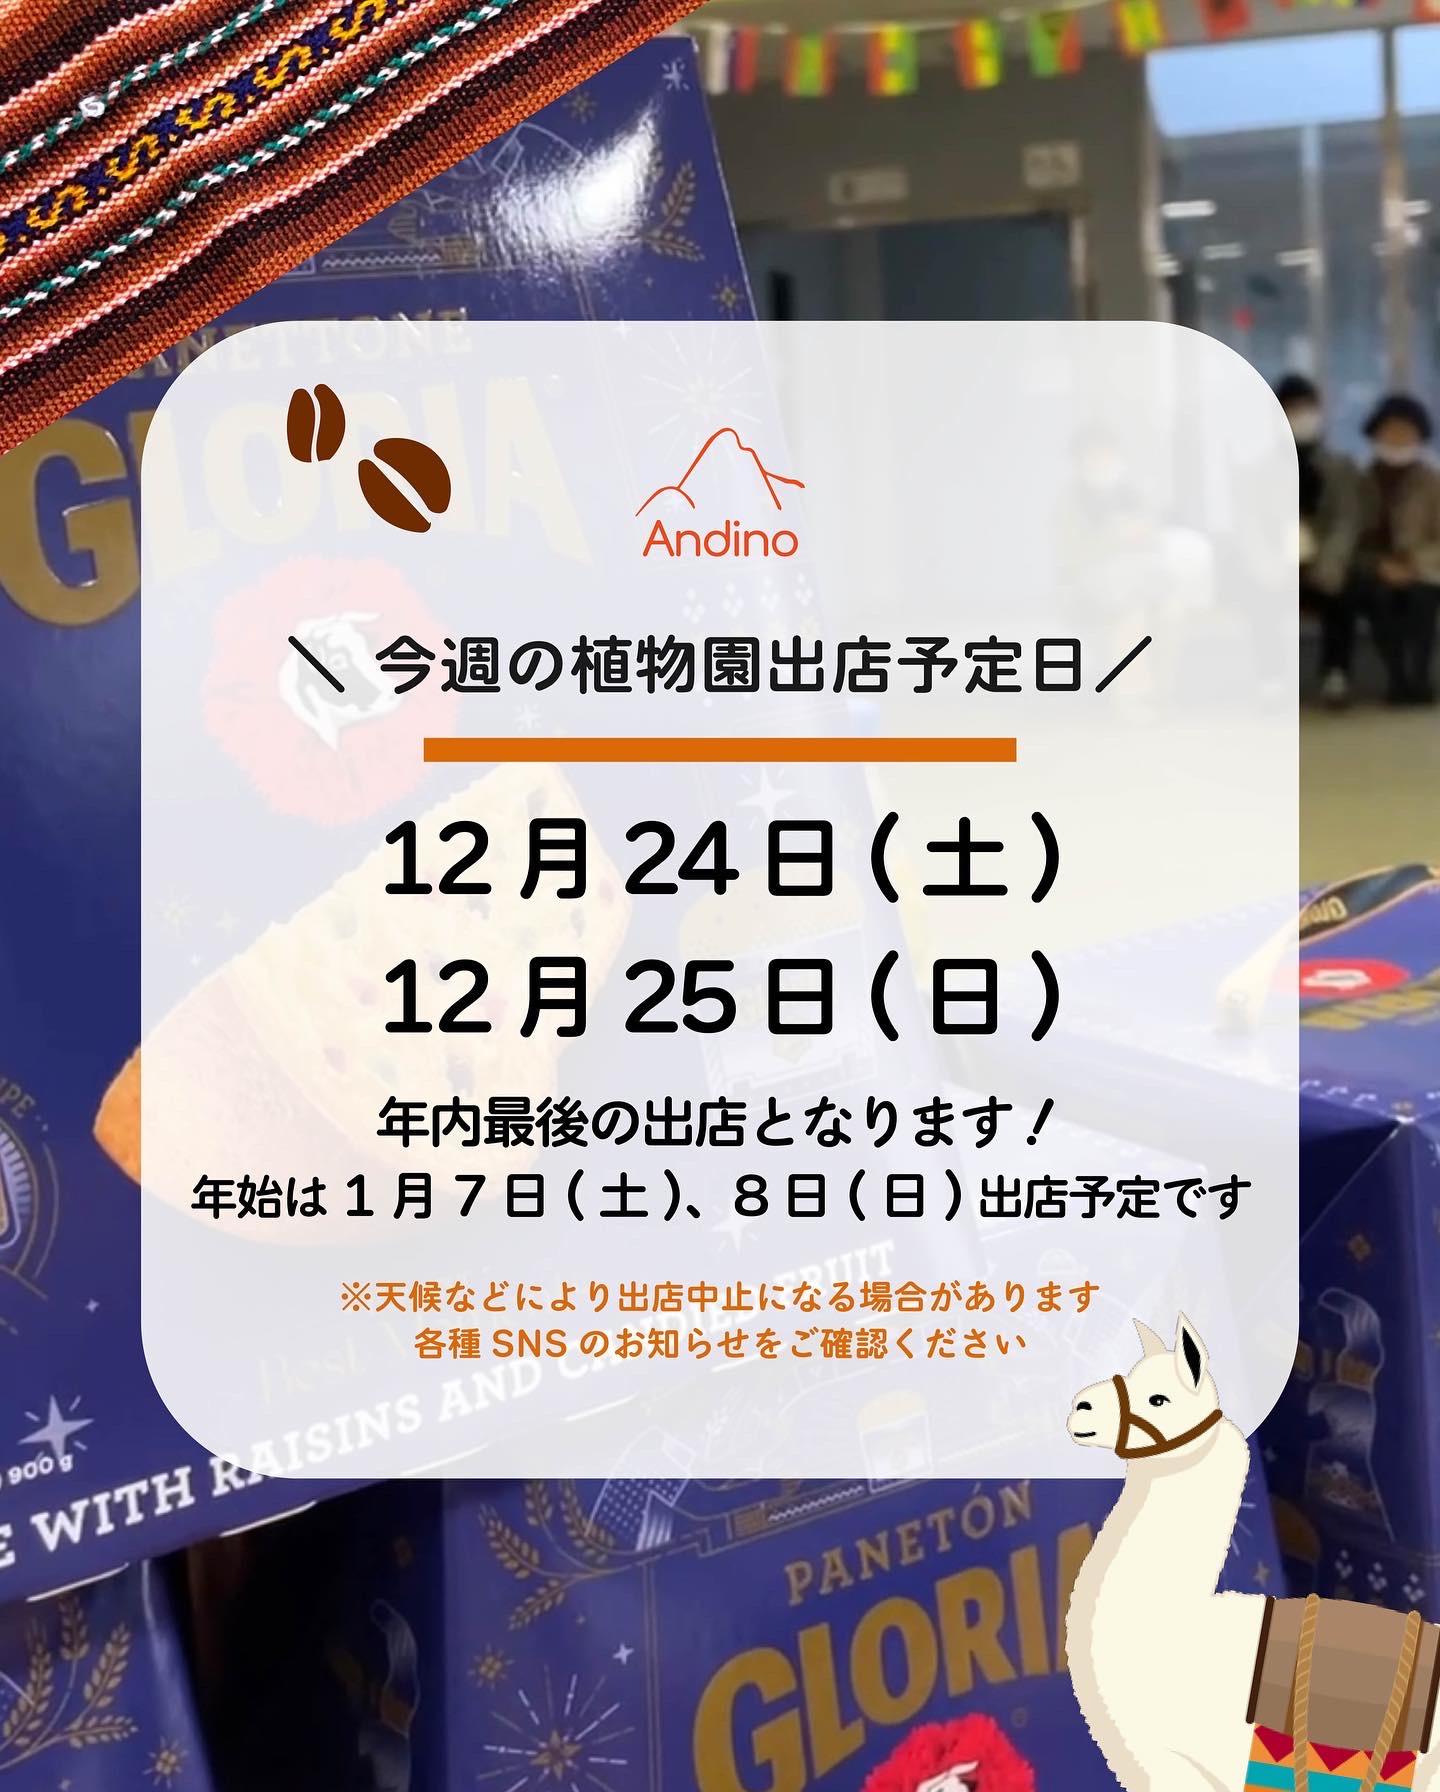 【📢今週のAndinoCAFE出店予定日🇵🇪12月24日(土)、25日(日)】